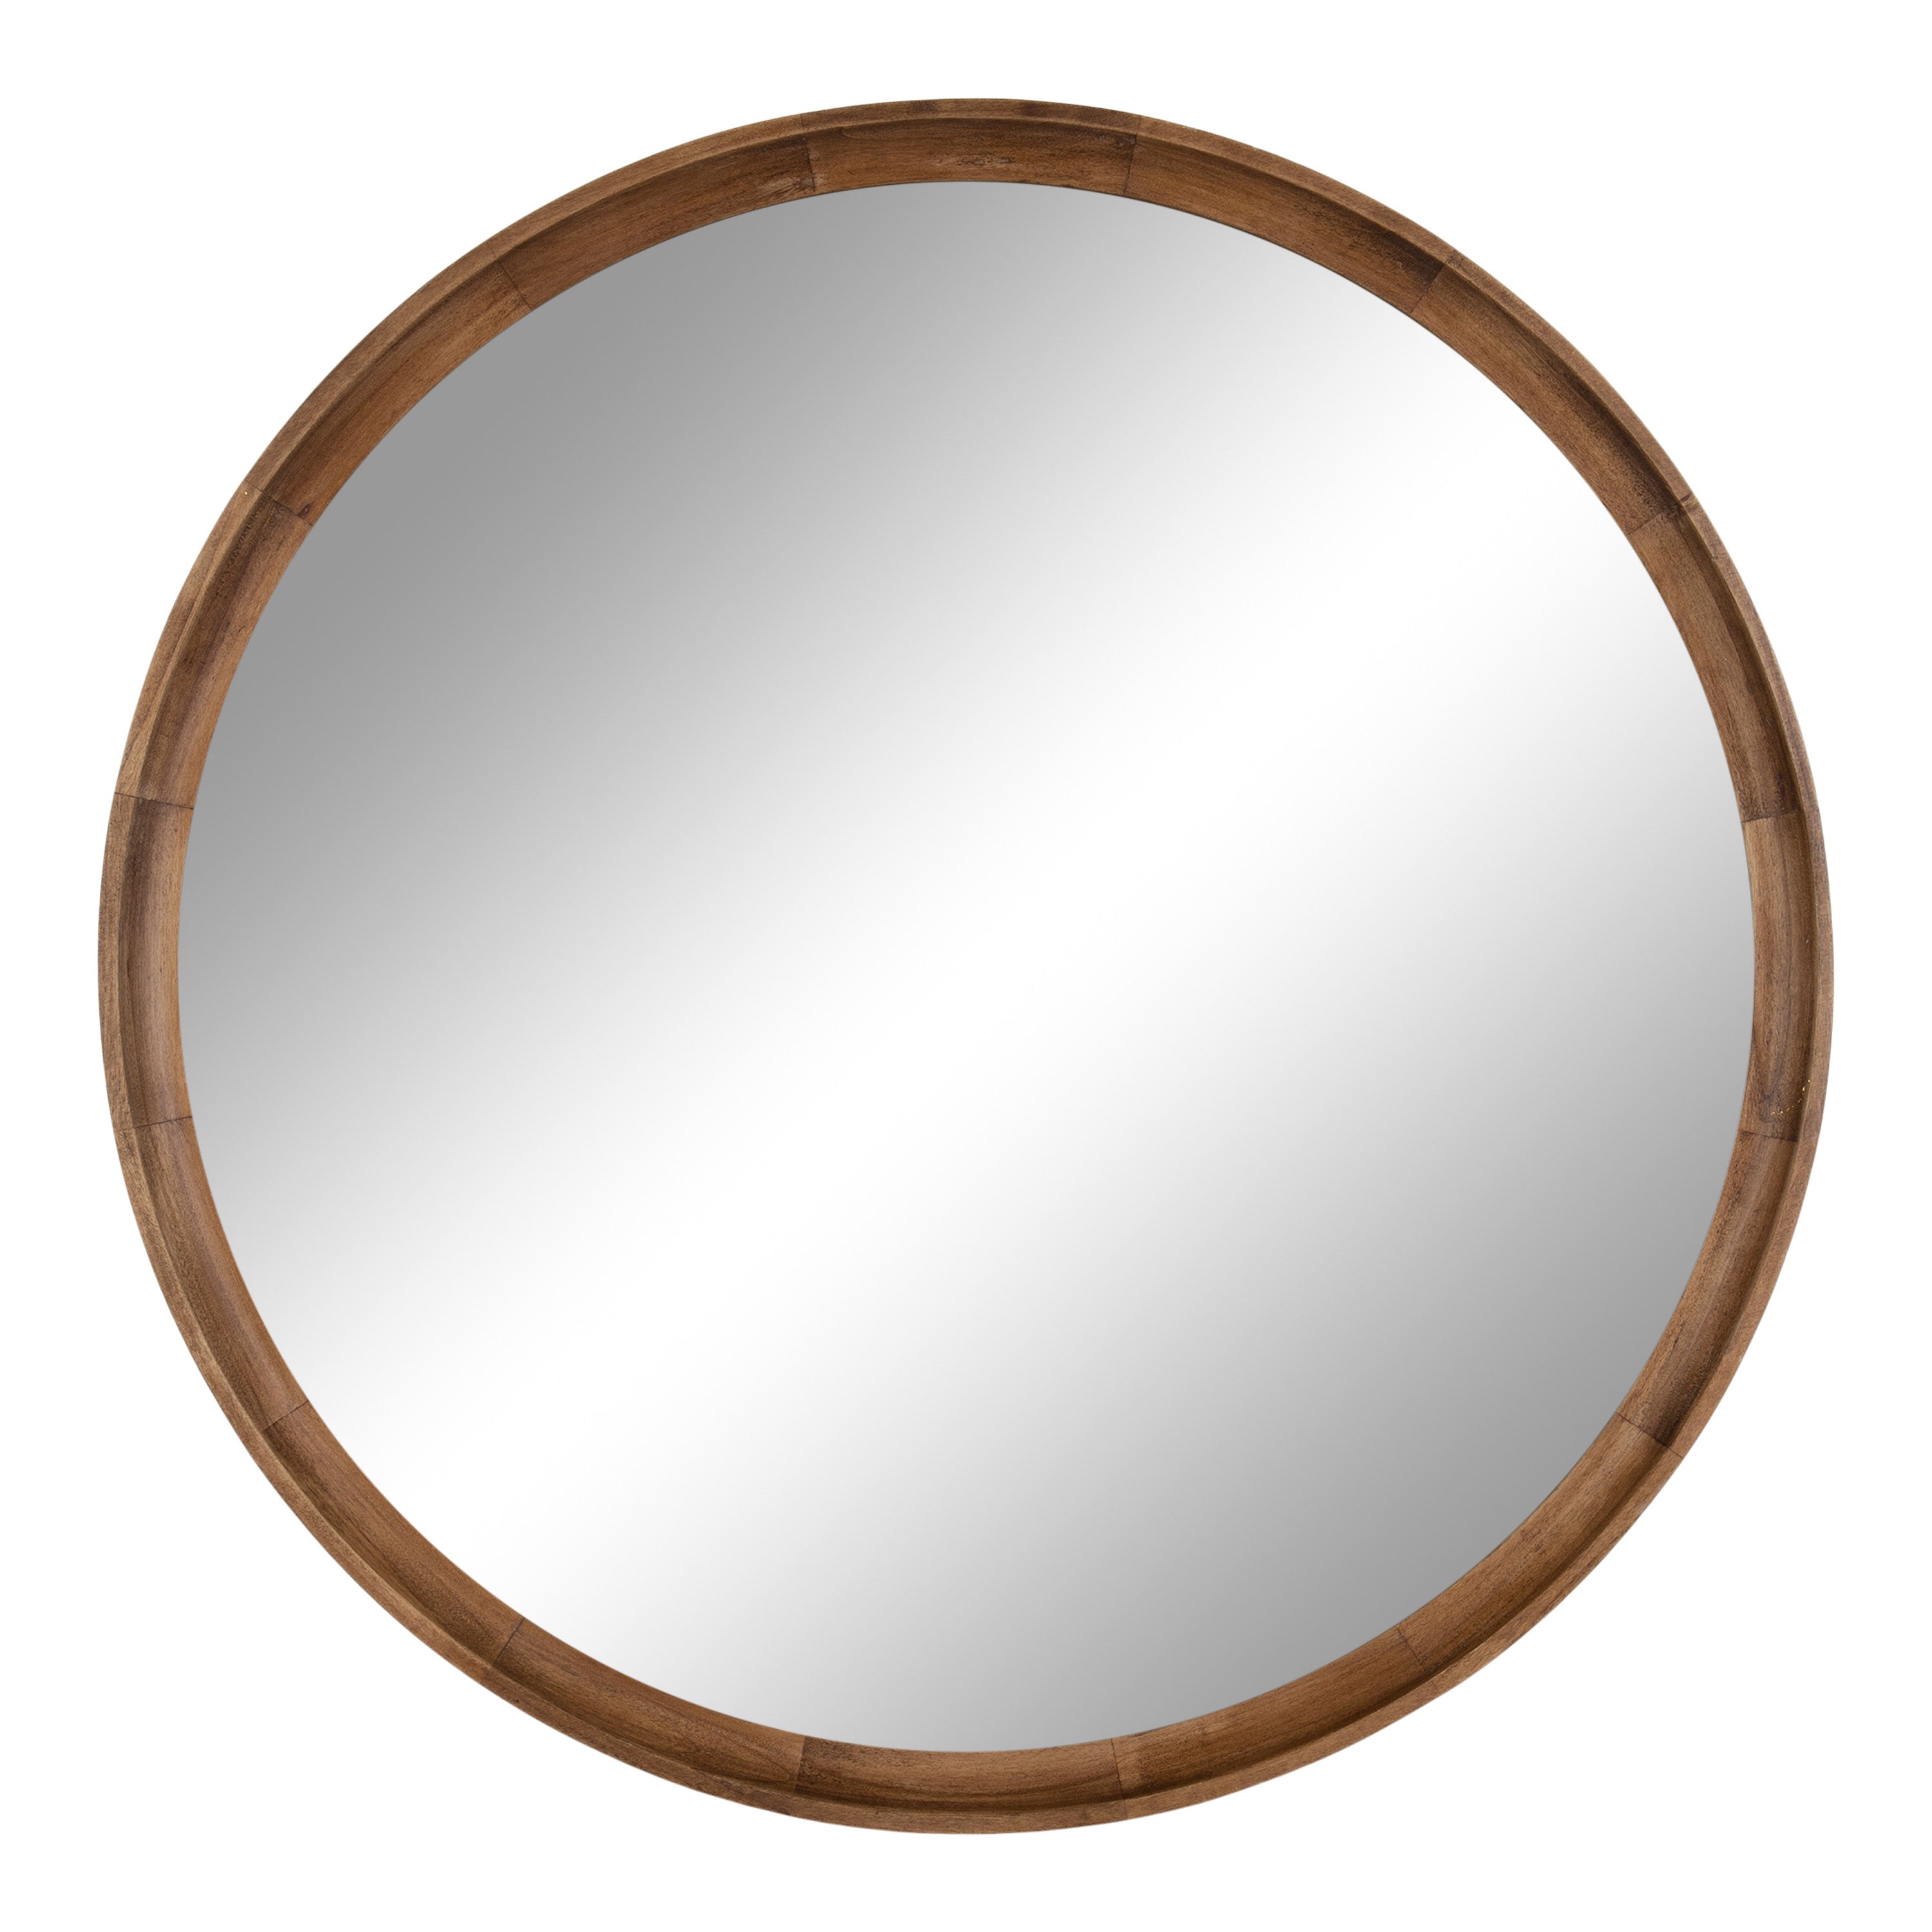 Hatherleigh Round Wall Mirror